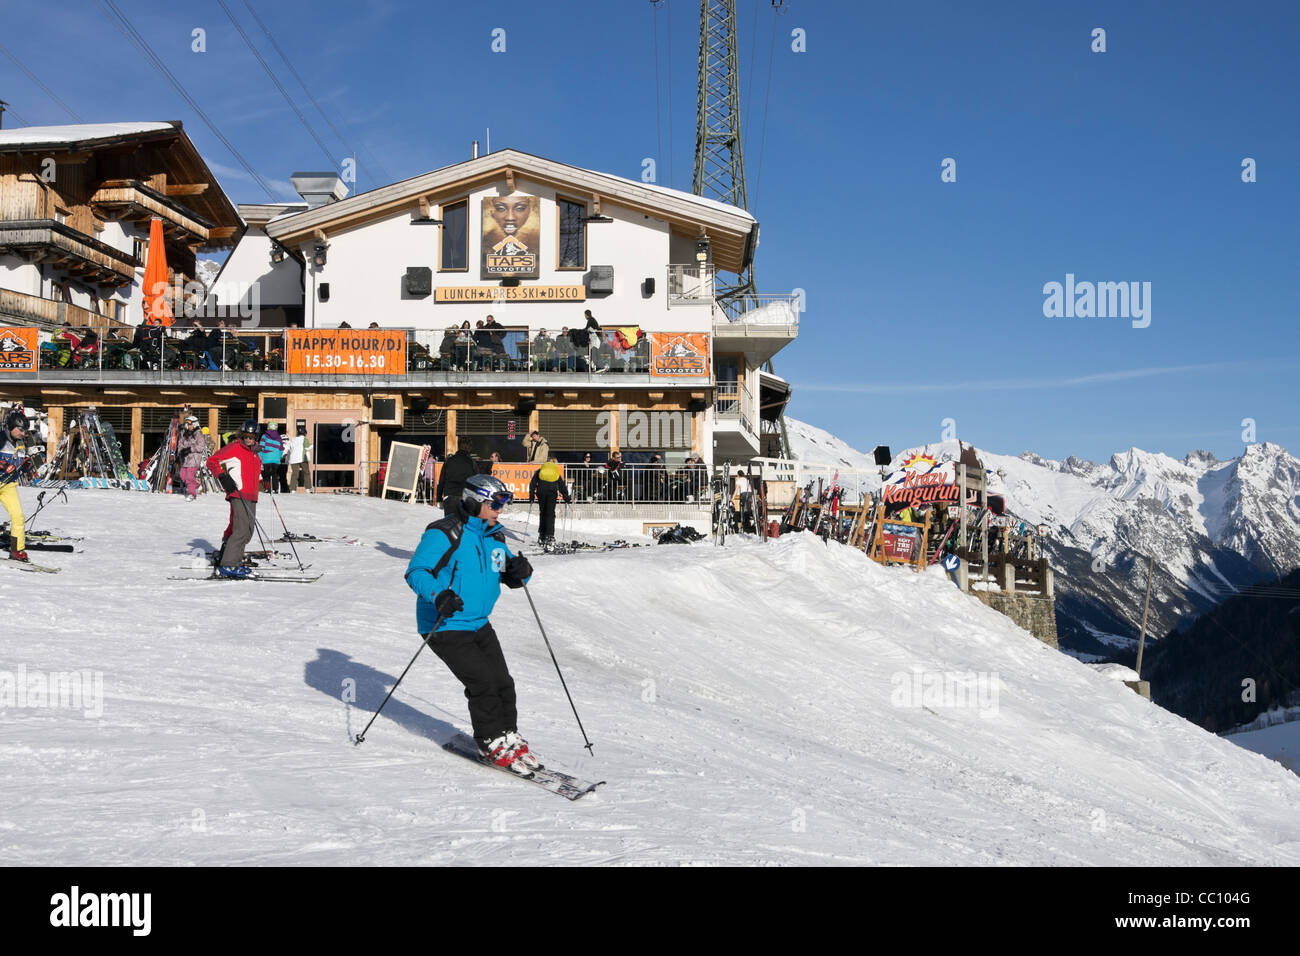 Die Wasserhähne Kojoten und Krazy Kanguruh Après-Ski-Bars mit Skifahrer auf schneebedeckte Pisten in Österreichische Alpen in St Anton Tyrol Österreich Skifahren. Stockfoto